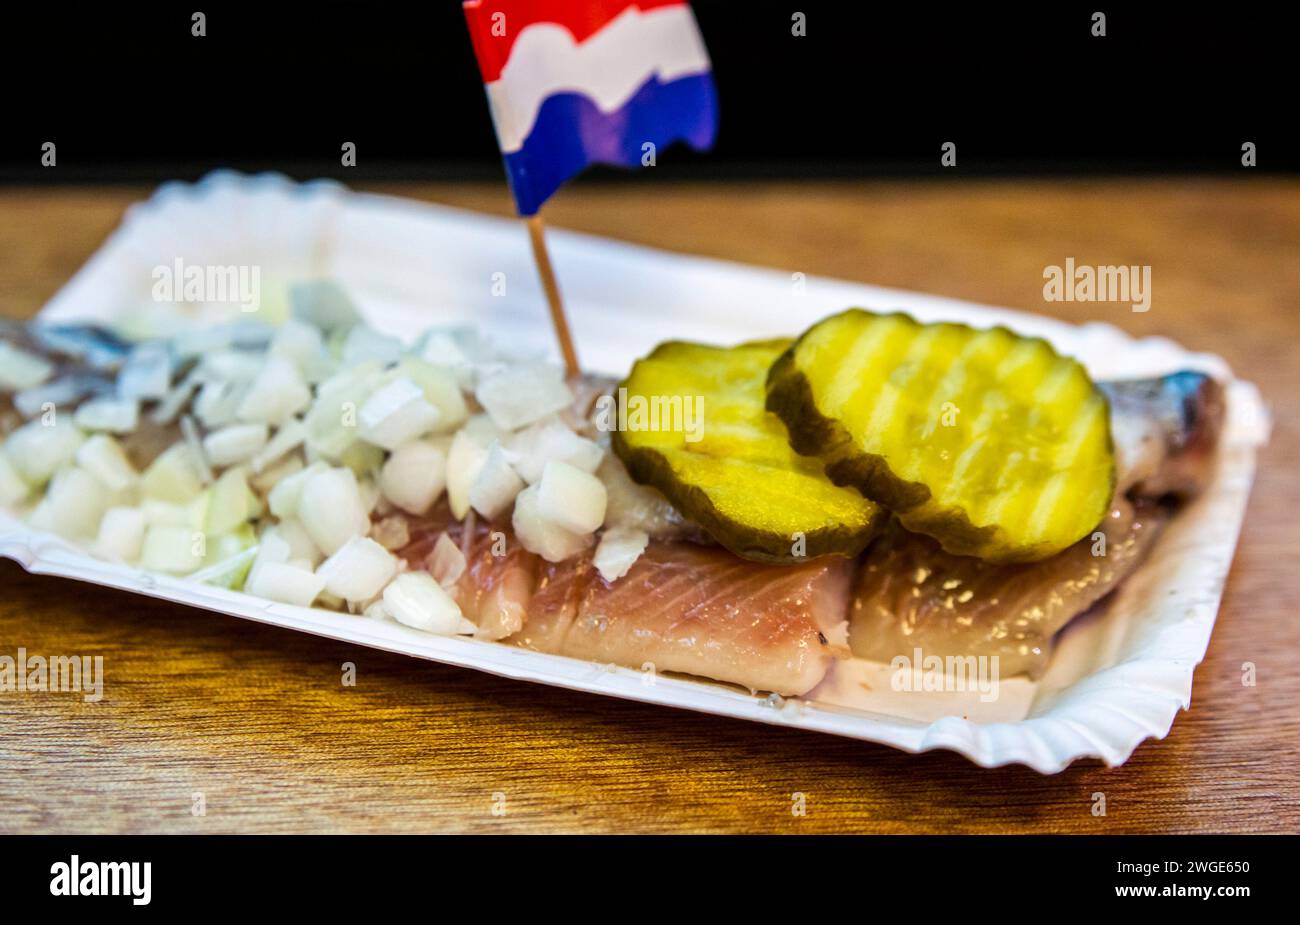 Berühmter holländischer Snack, rohes Heringsfilet mit eingelegten Gurkenscheiben, Zwiebeln und niederländischer Nationalflagge. Stockfoto